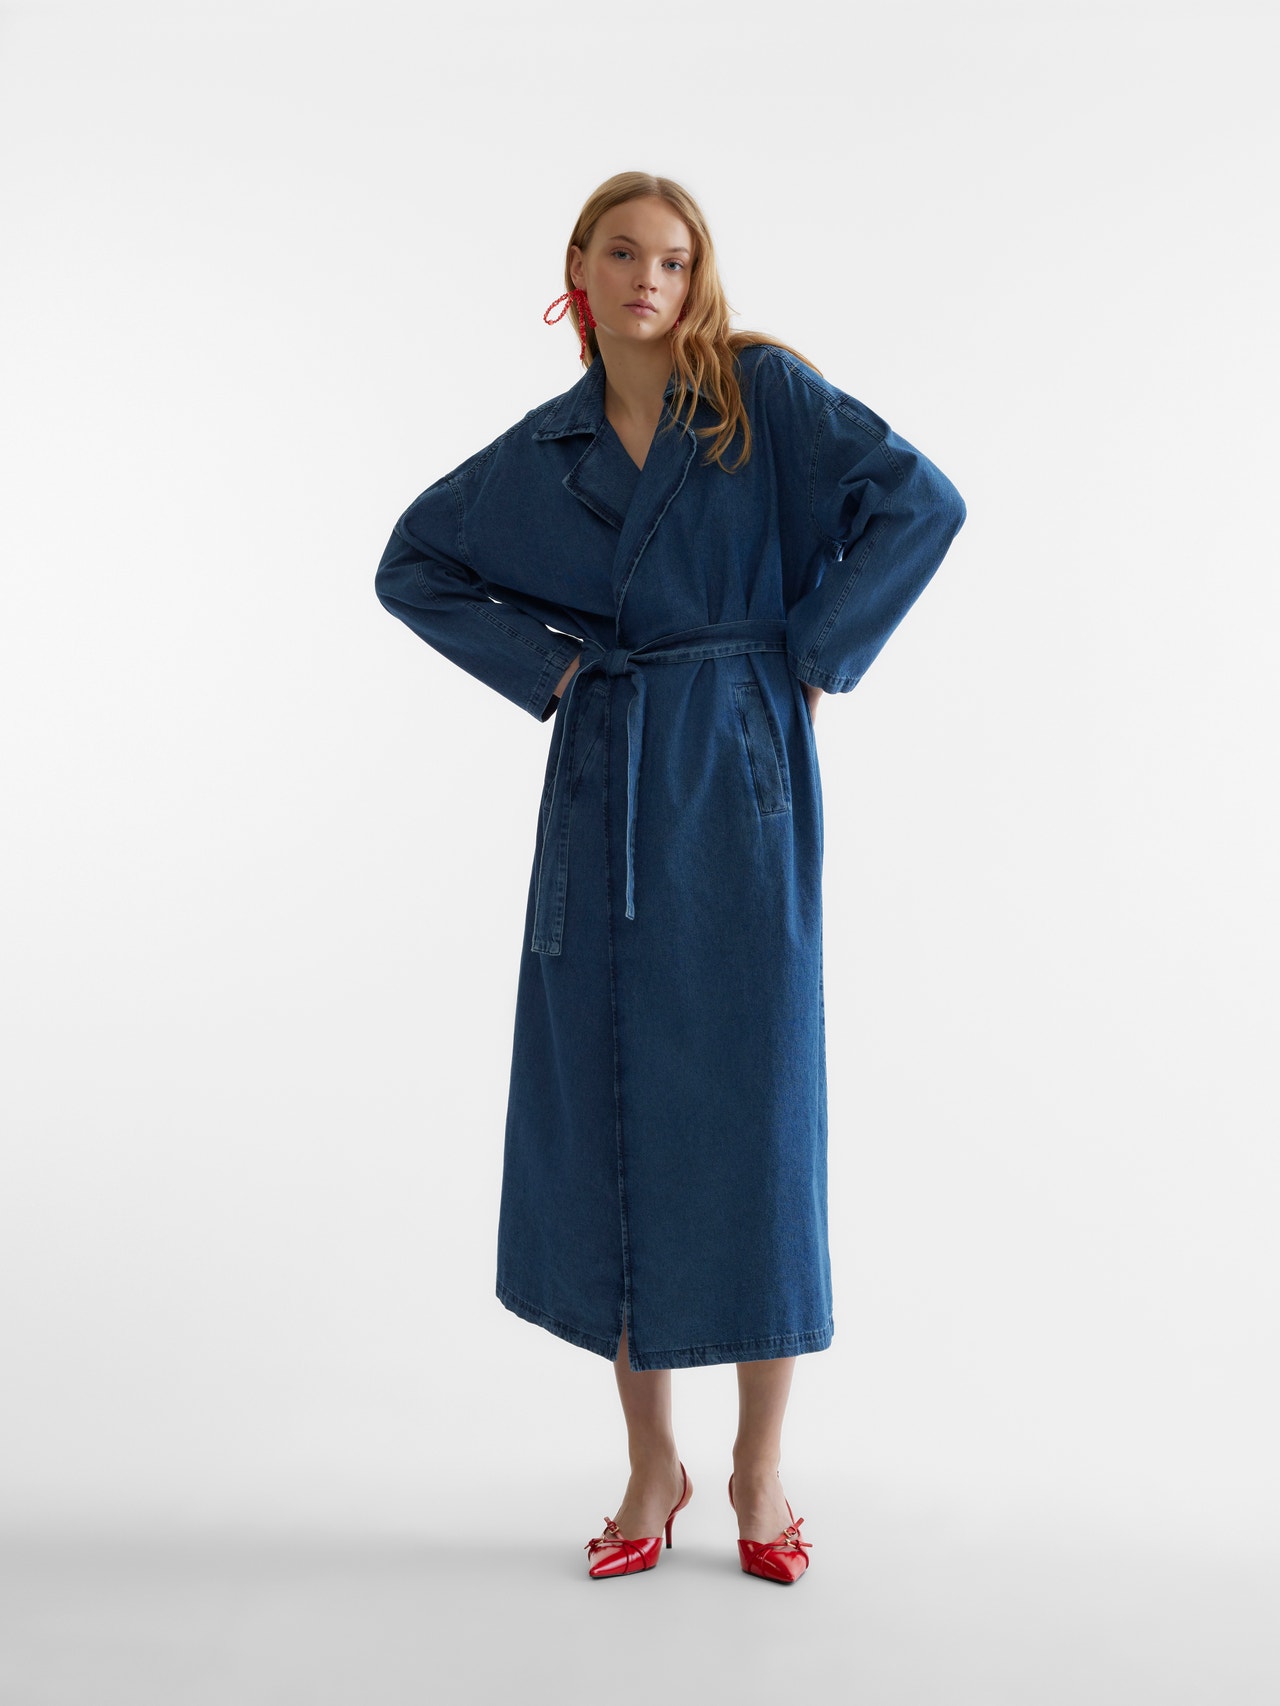 Vero Moda SOMETHINGNEW X THE ATELIER Coat -Medium Blue Denim - 10306995